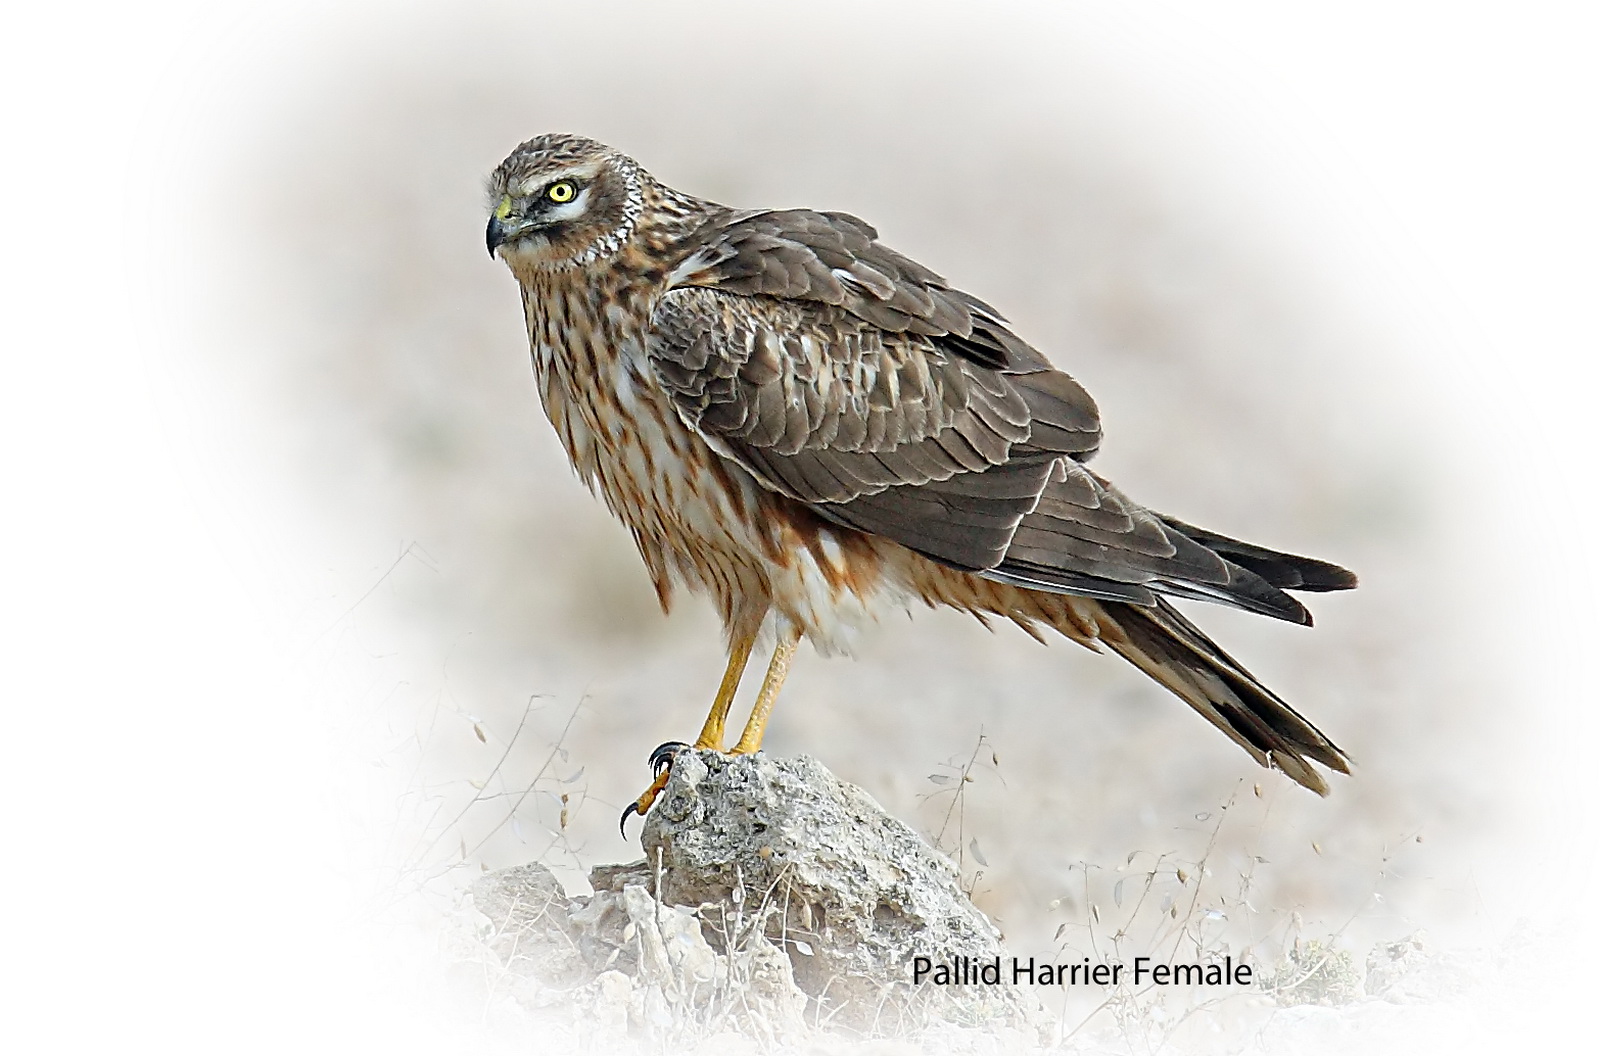 Harrier Pallied Female